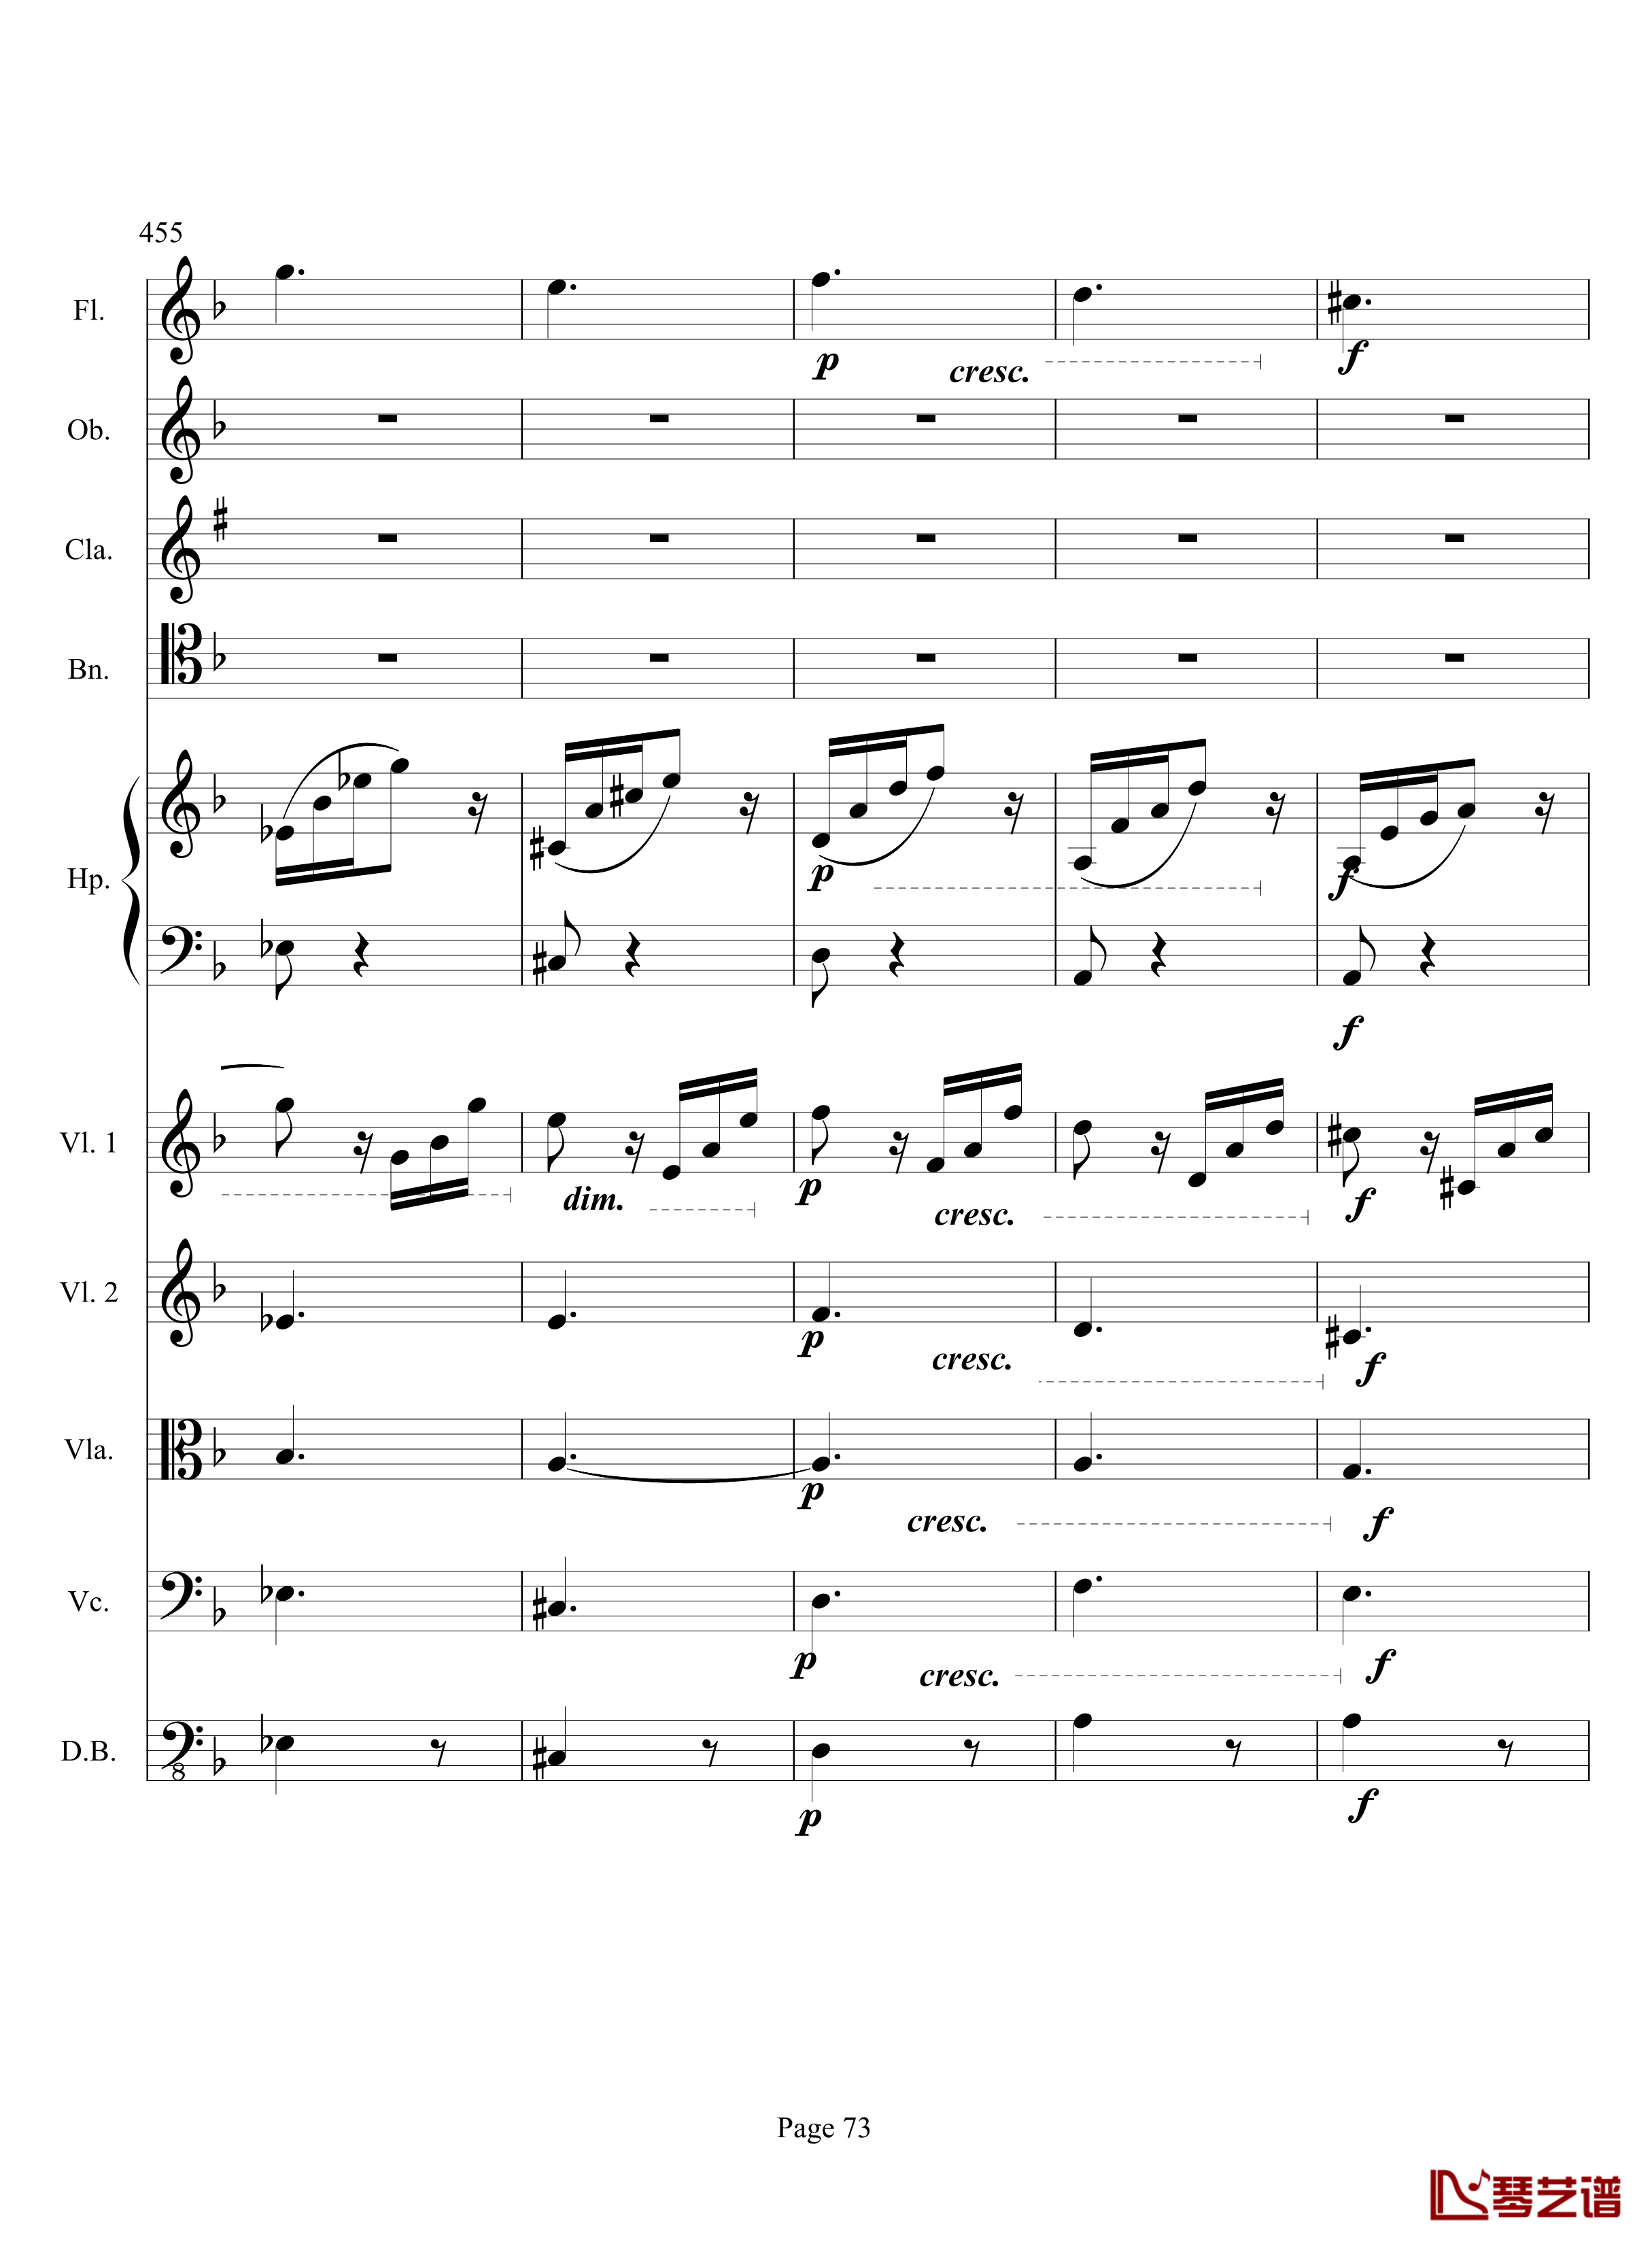 奏鸣曲之交响钢琴谱-第17首-Ⅲ-贝多芬-beethoven73